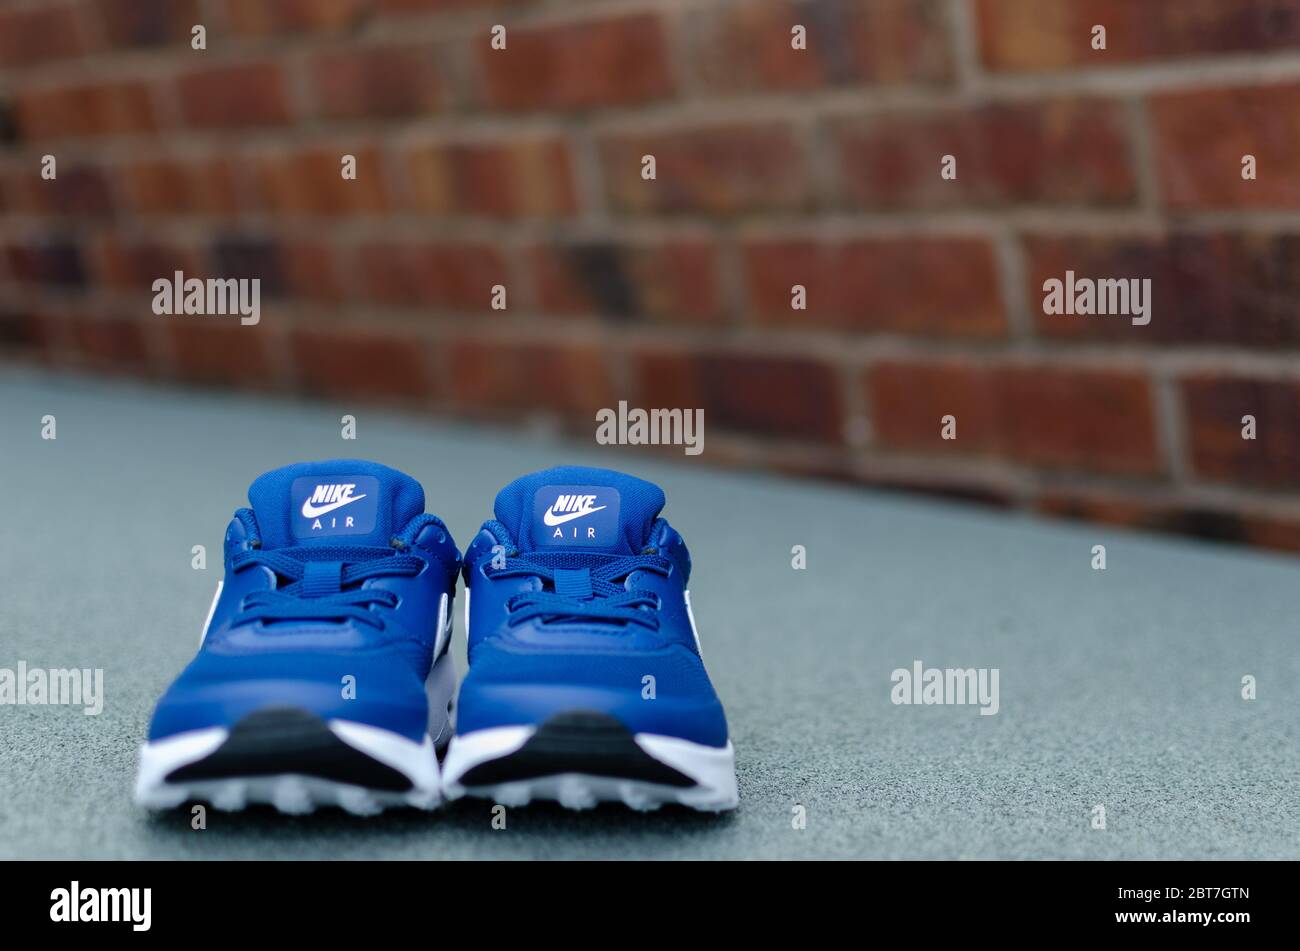 La foto ravvicinata del paio di scarpe Nike Air blu per bambini. Il muro di mattoni è sullo sfondo. Per l'imaging è stato utilizzato un campo visivo poco profondo. Foto Stock